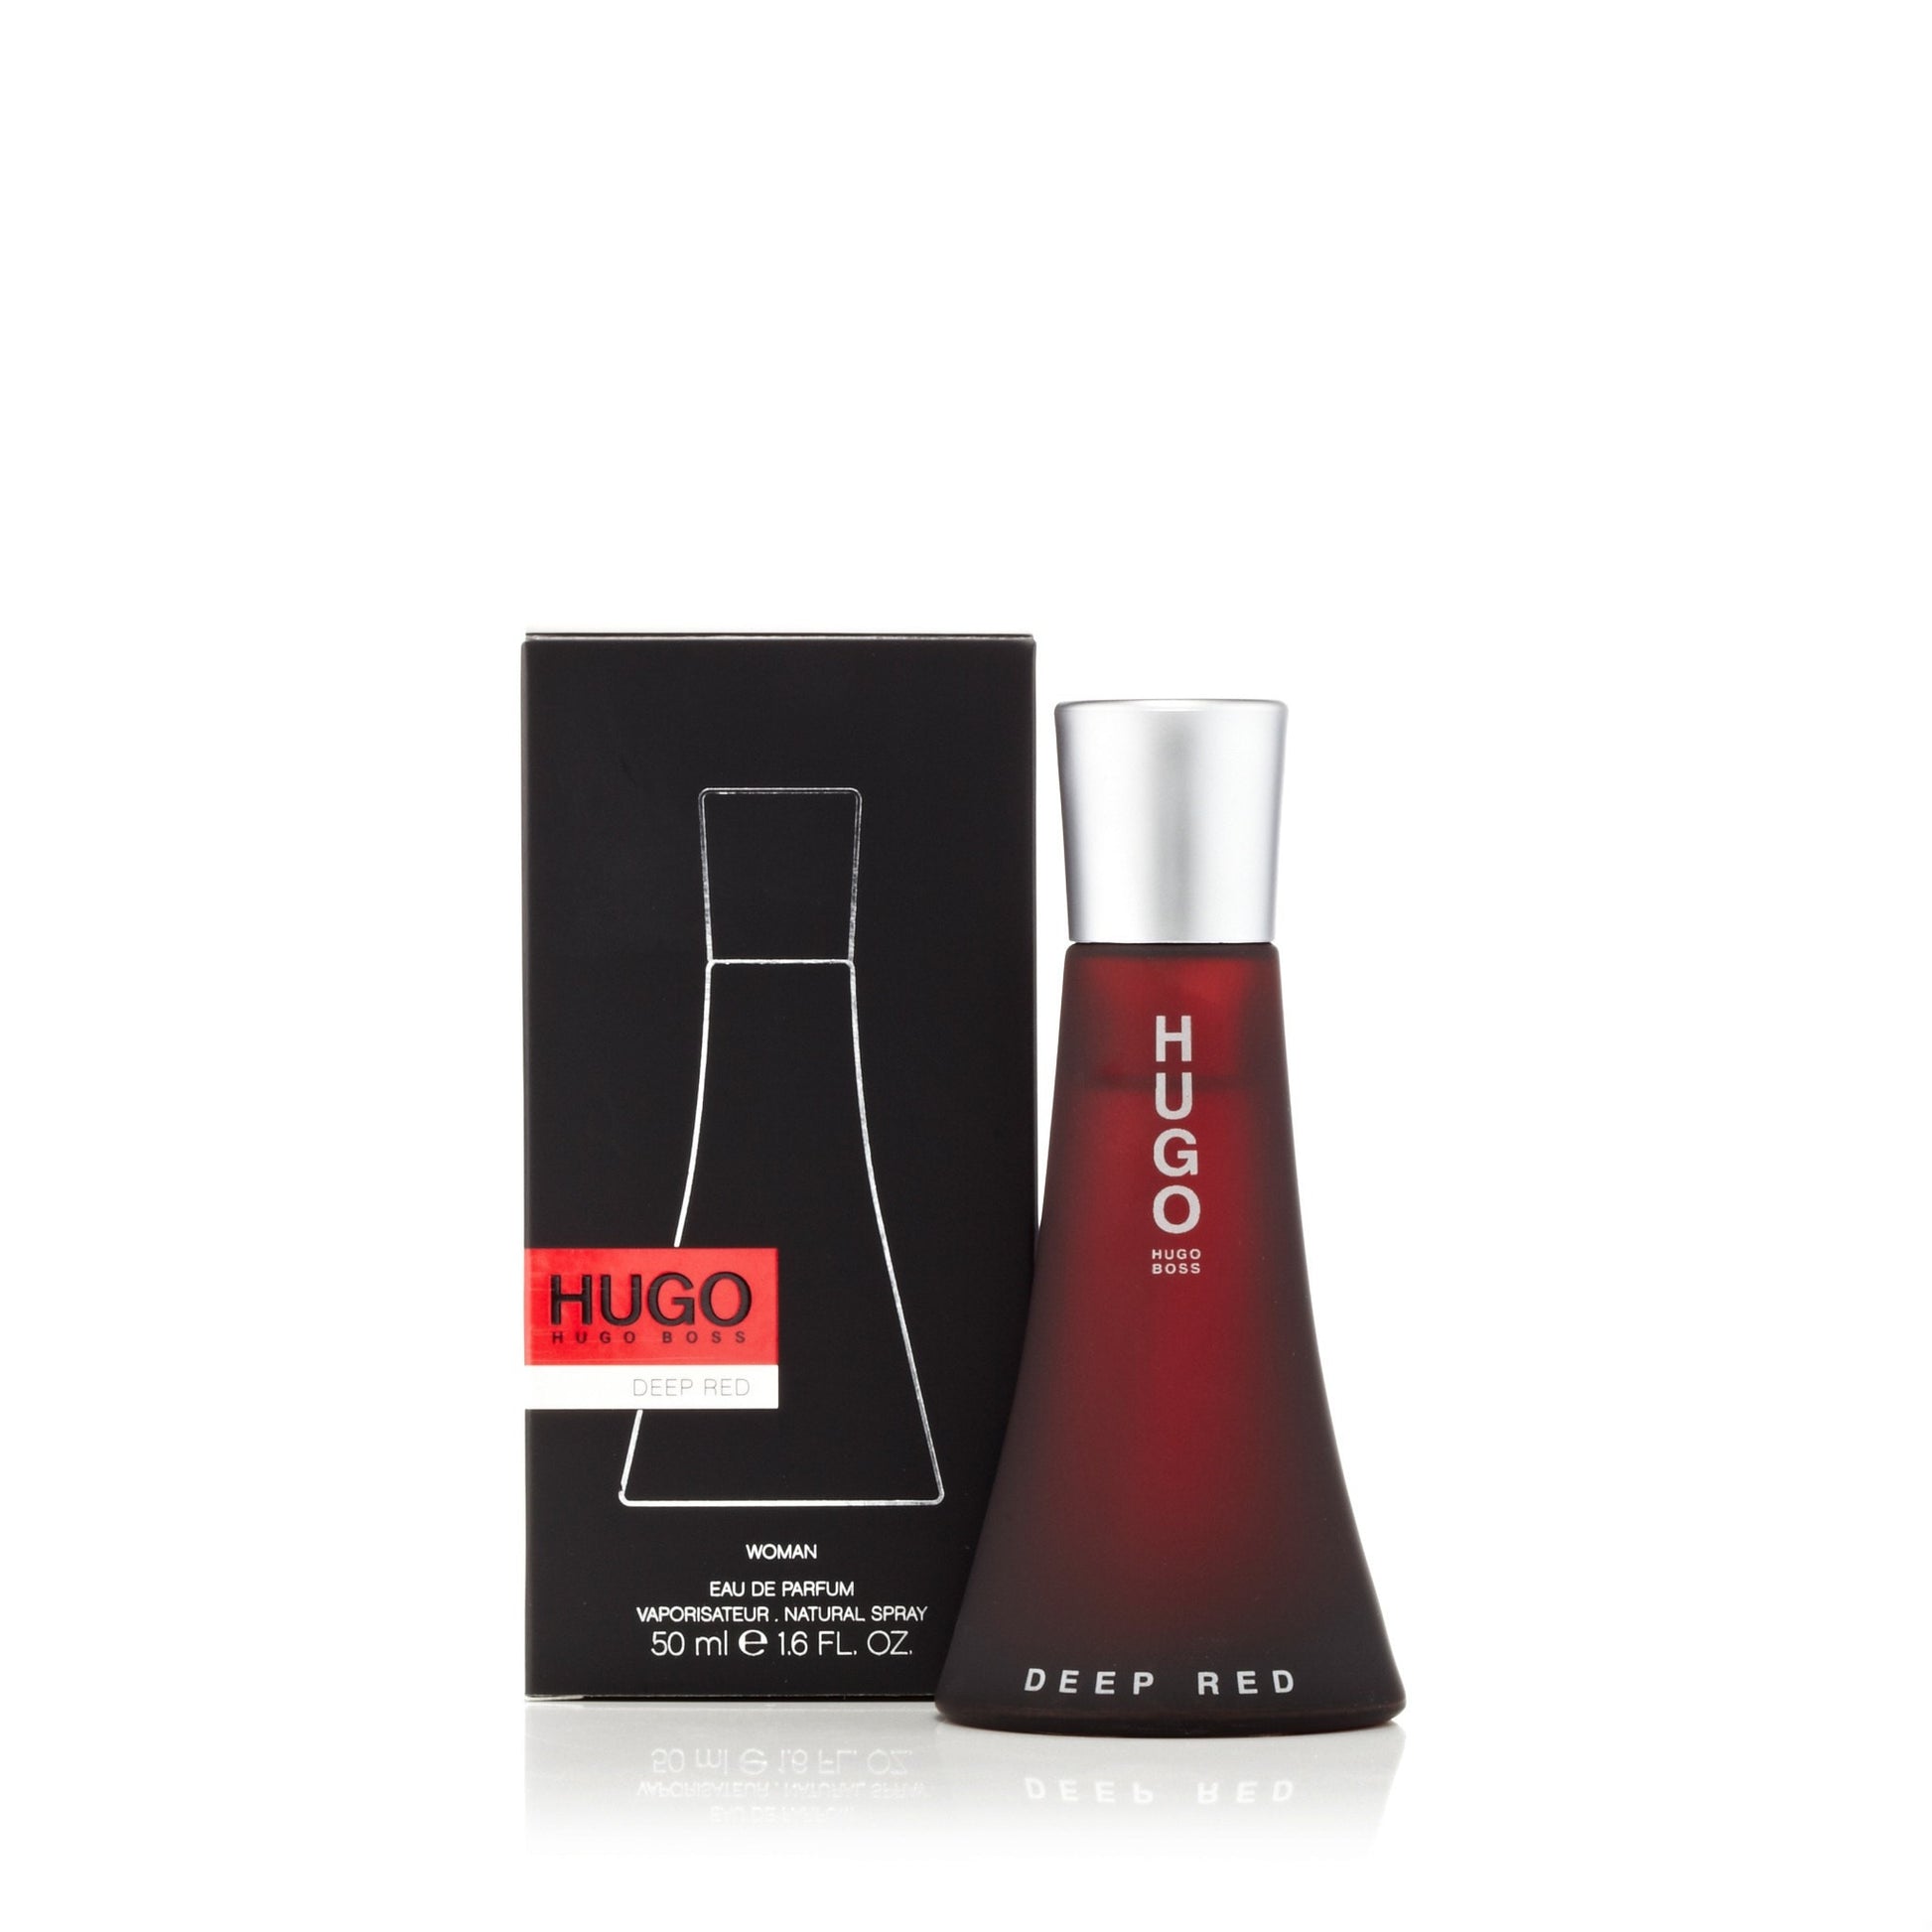 Hugo Deep Red Eau de Parfum Spray for Women by Hugo Boss 1.6 oz. Click to open in modal